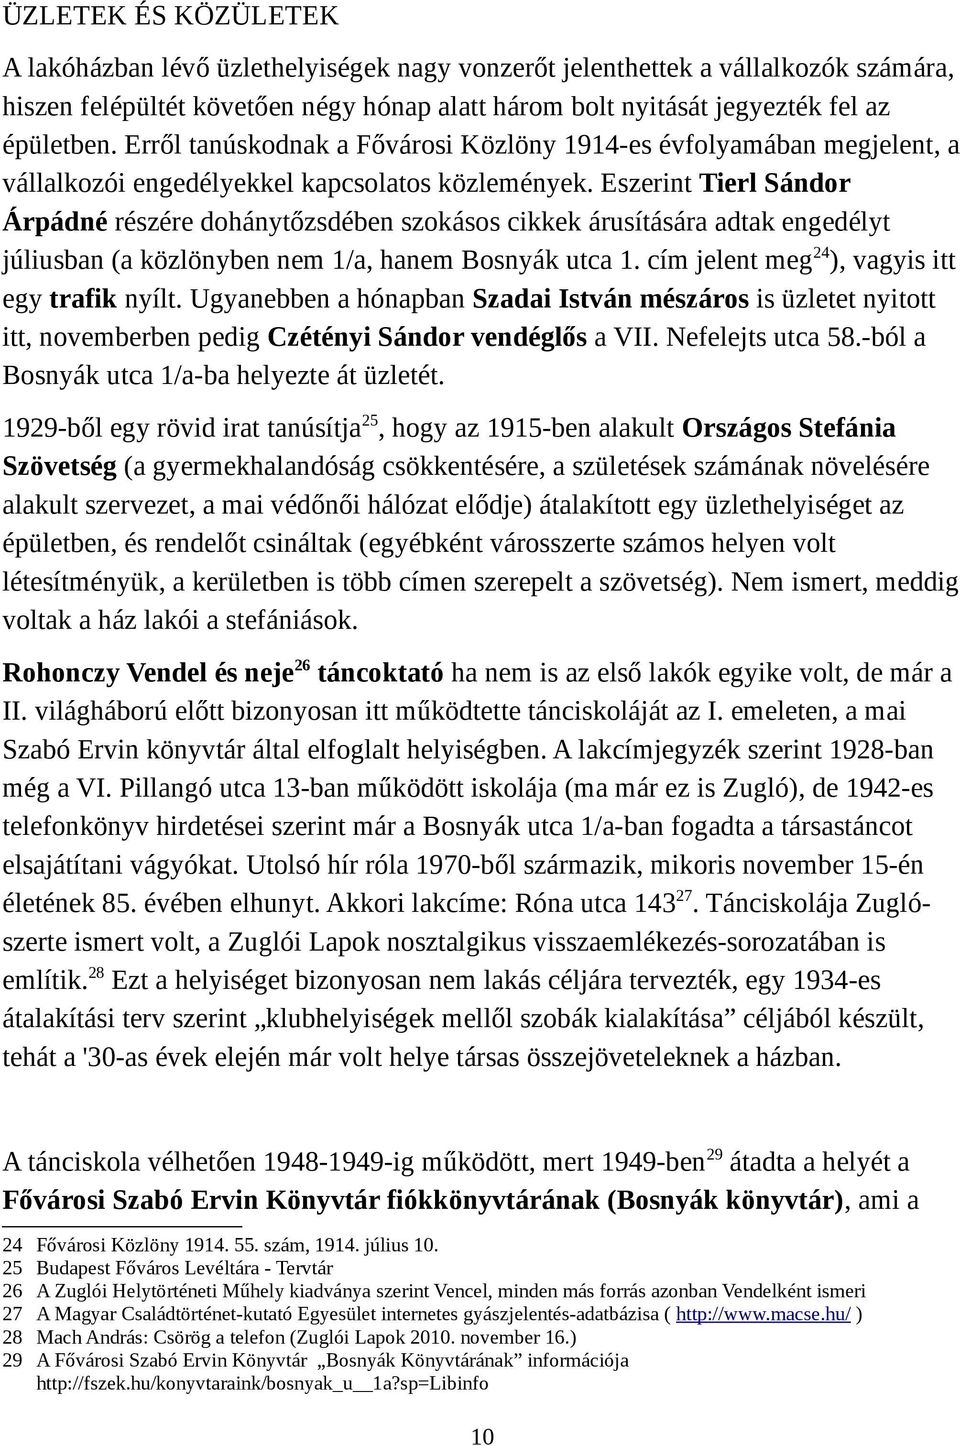 Eszerint Tierl Sándor Árpádné részére dohánytőzsdében szokásos cikkek árusítására adtak engedélyt júliusban (a közlönyben nem 1/a, hanem Bosnyák utca 1. cím jelent meg24), vagyis itt egy trafik nyílt.